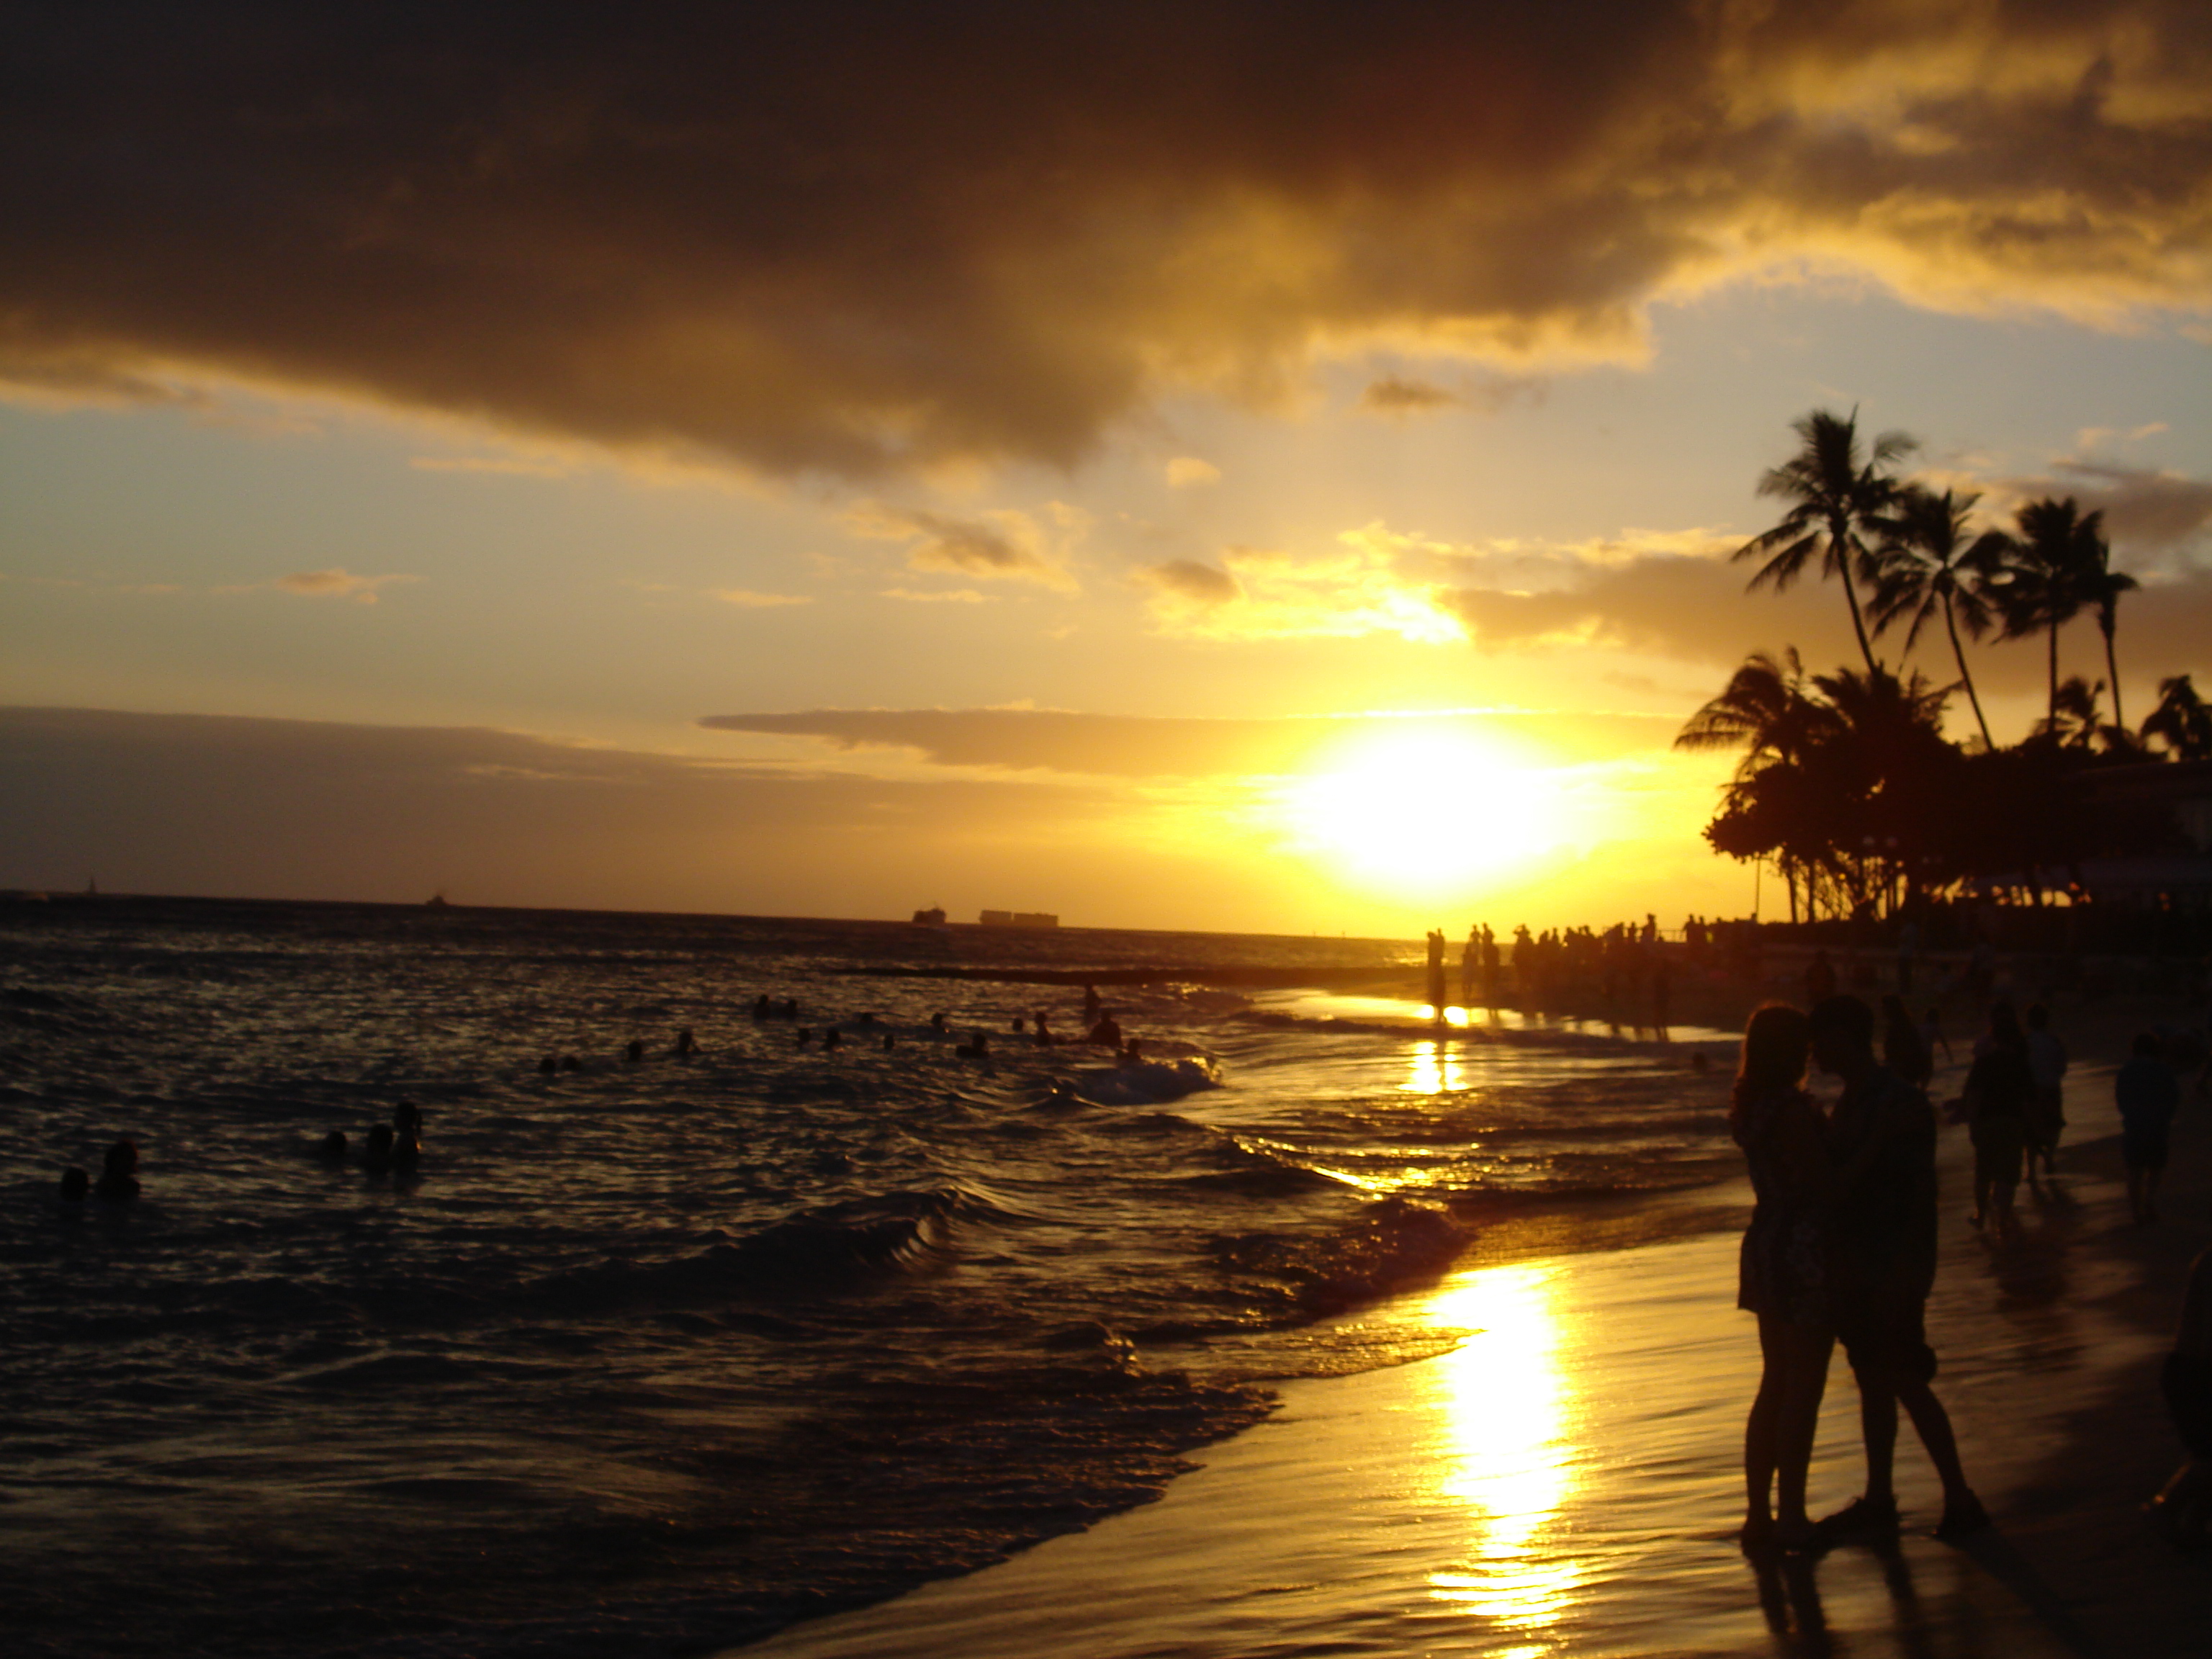 File:Waikiki Beach at Sunset.jpg - Wikimedia Commons